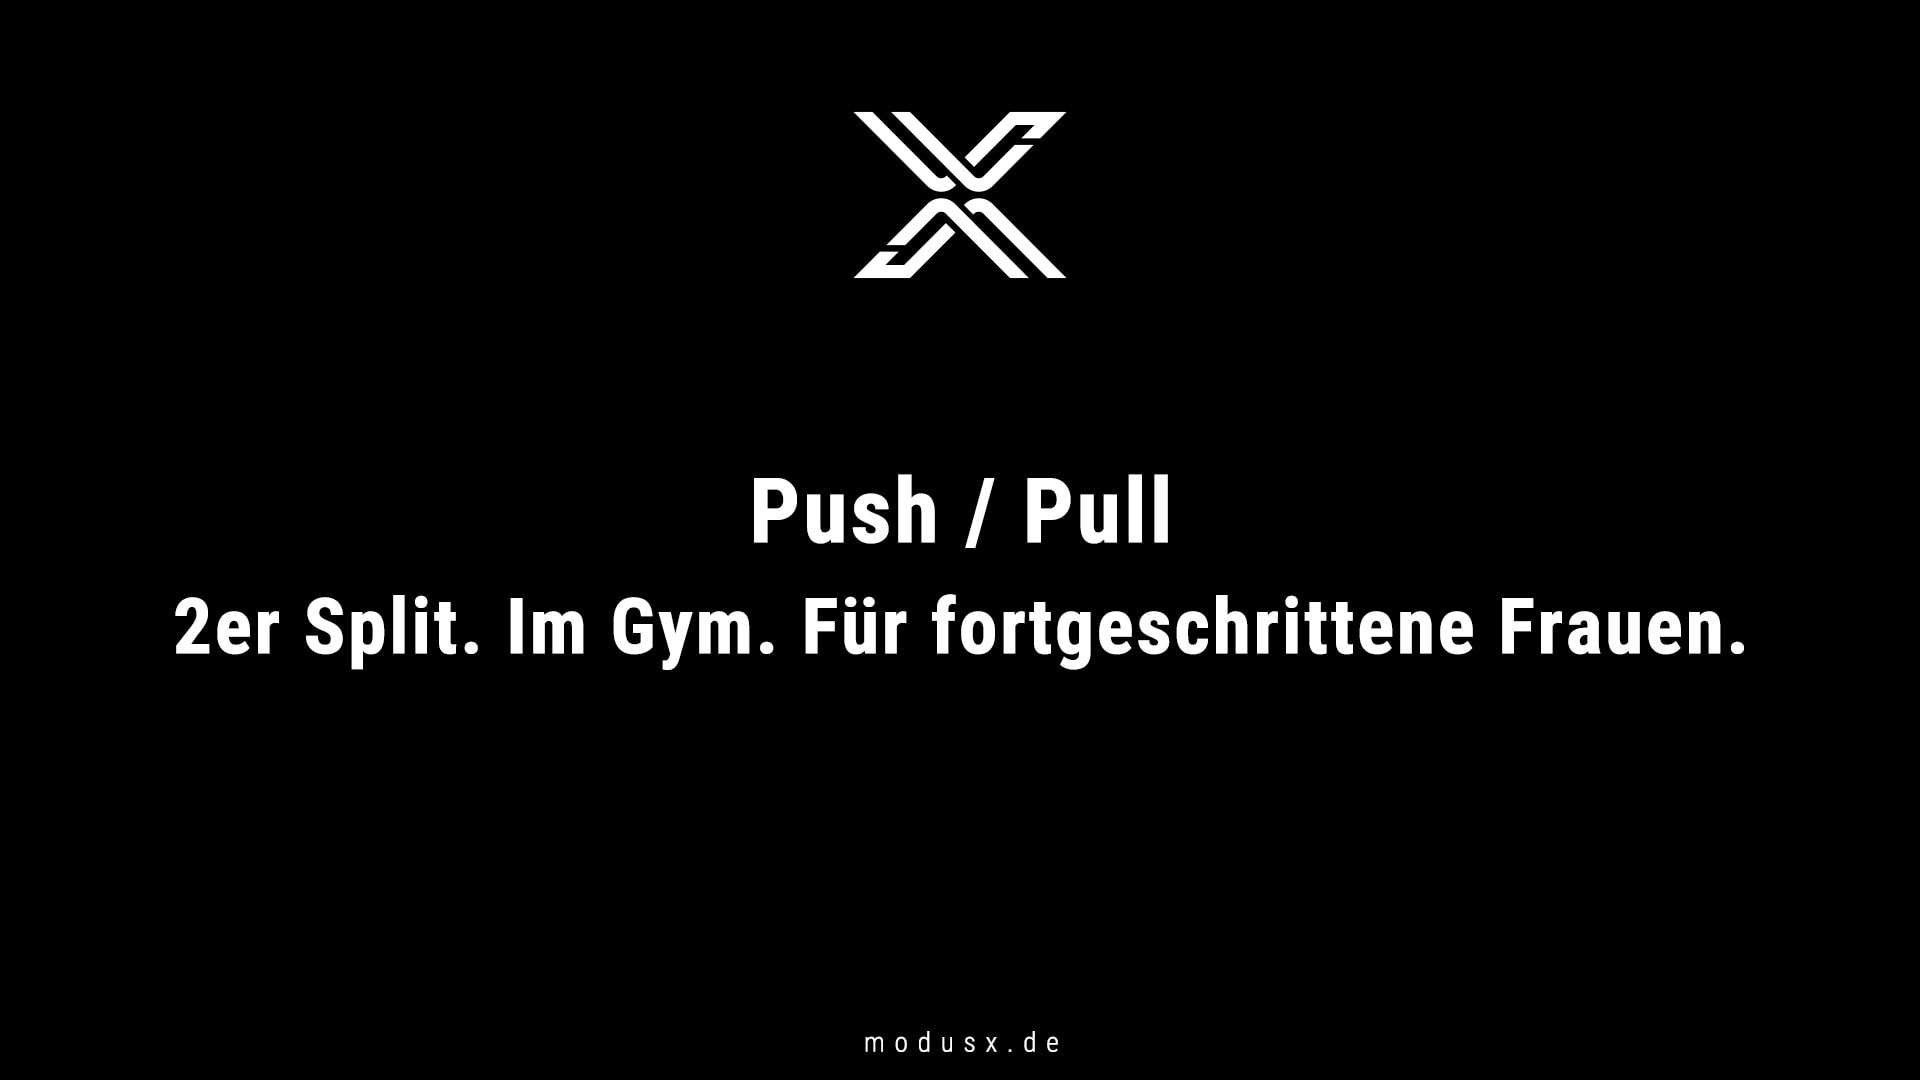 Bild zum Thema Push / Pull im Gym für fortgeschrittene Frauen